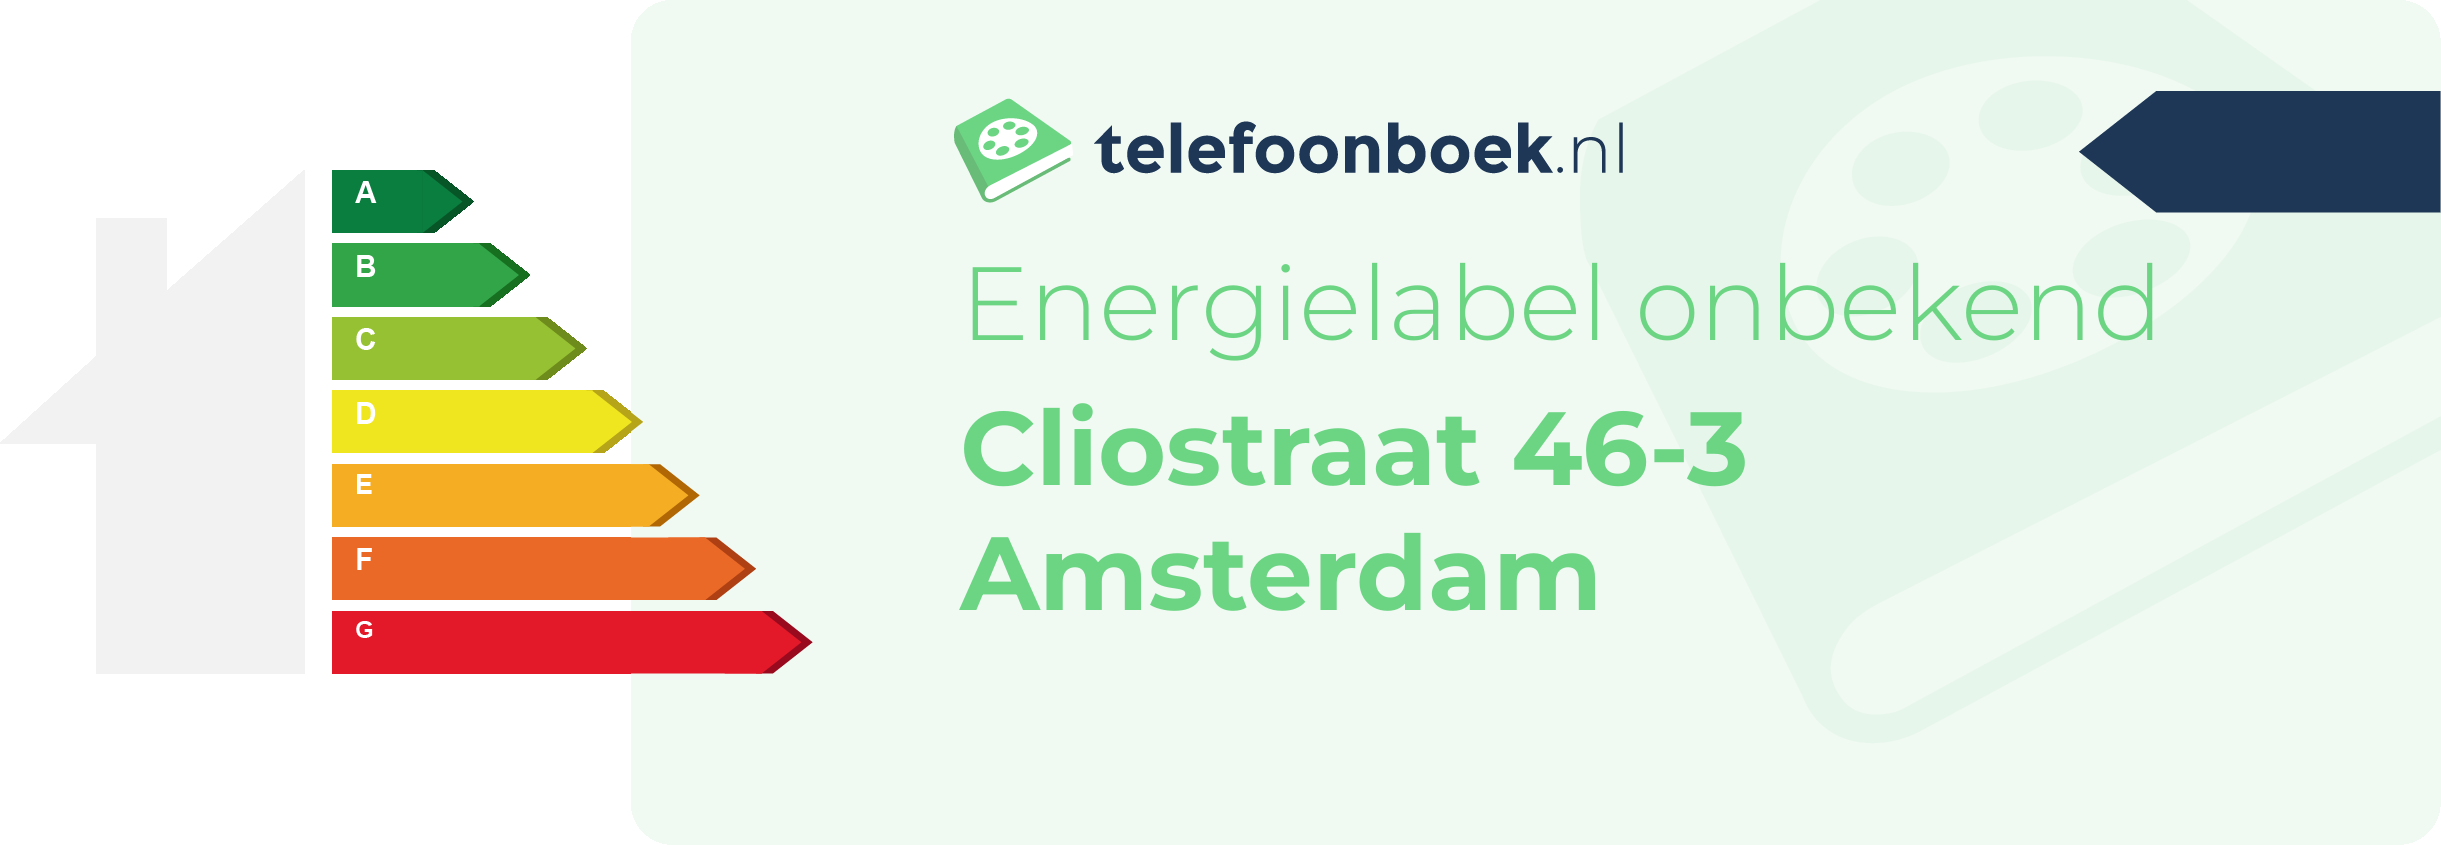 Energielabel Cliostraat 46-3 Amsterdam